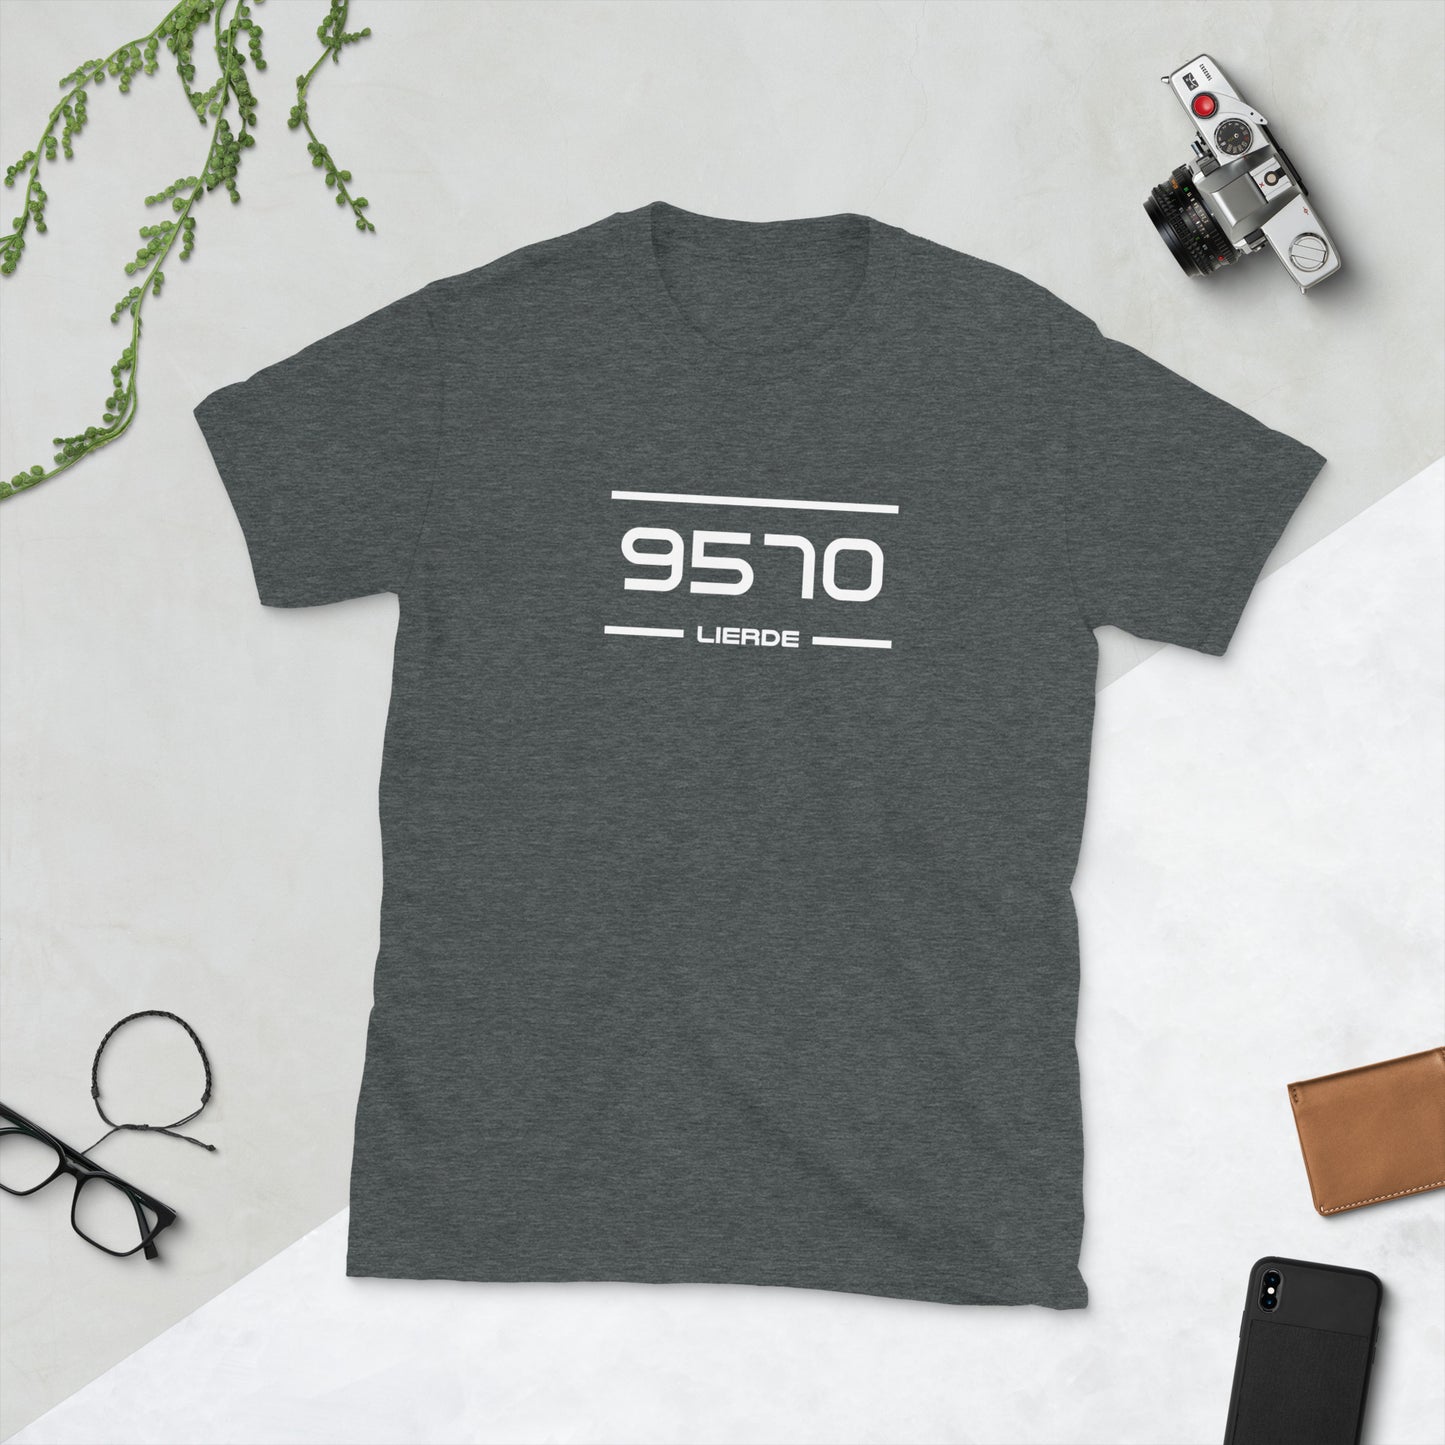 T-Shirt - 9570 - Lierde